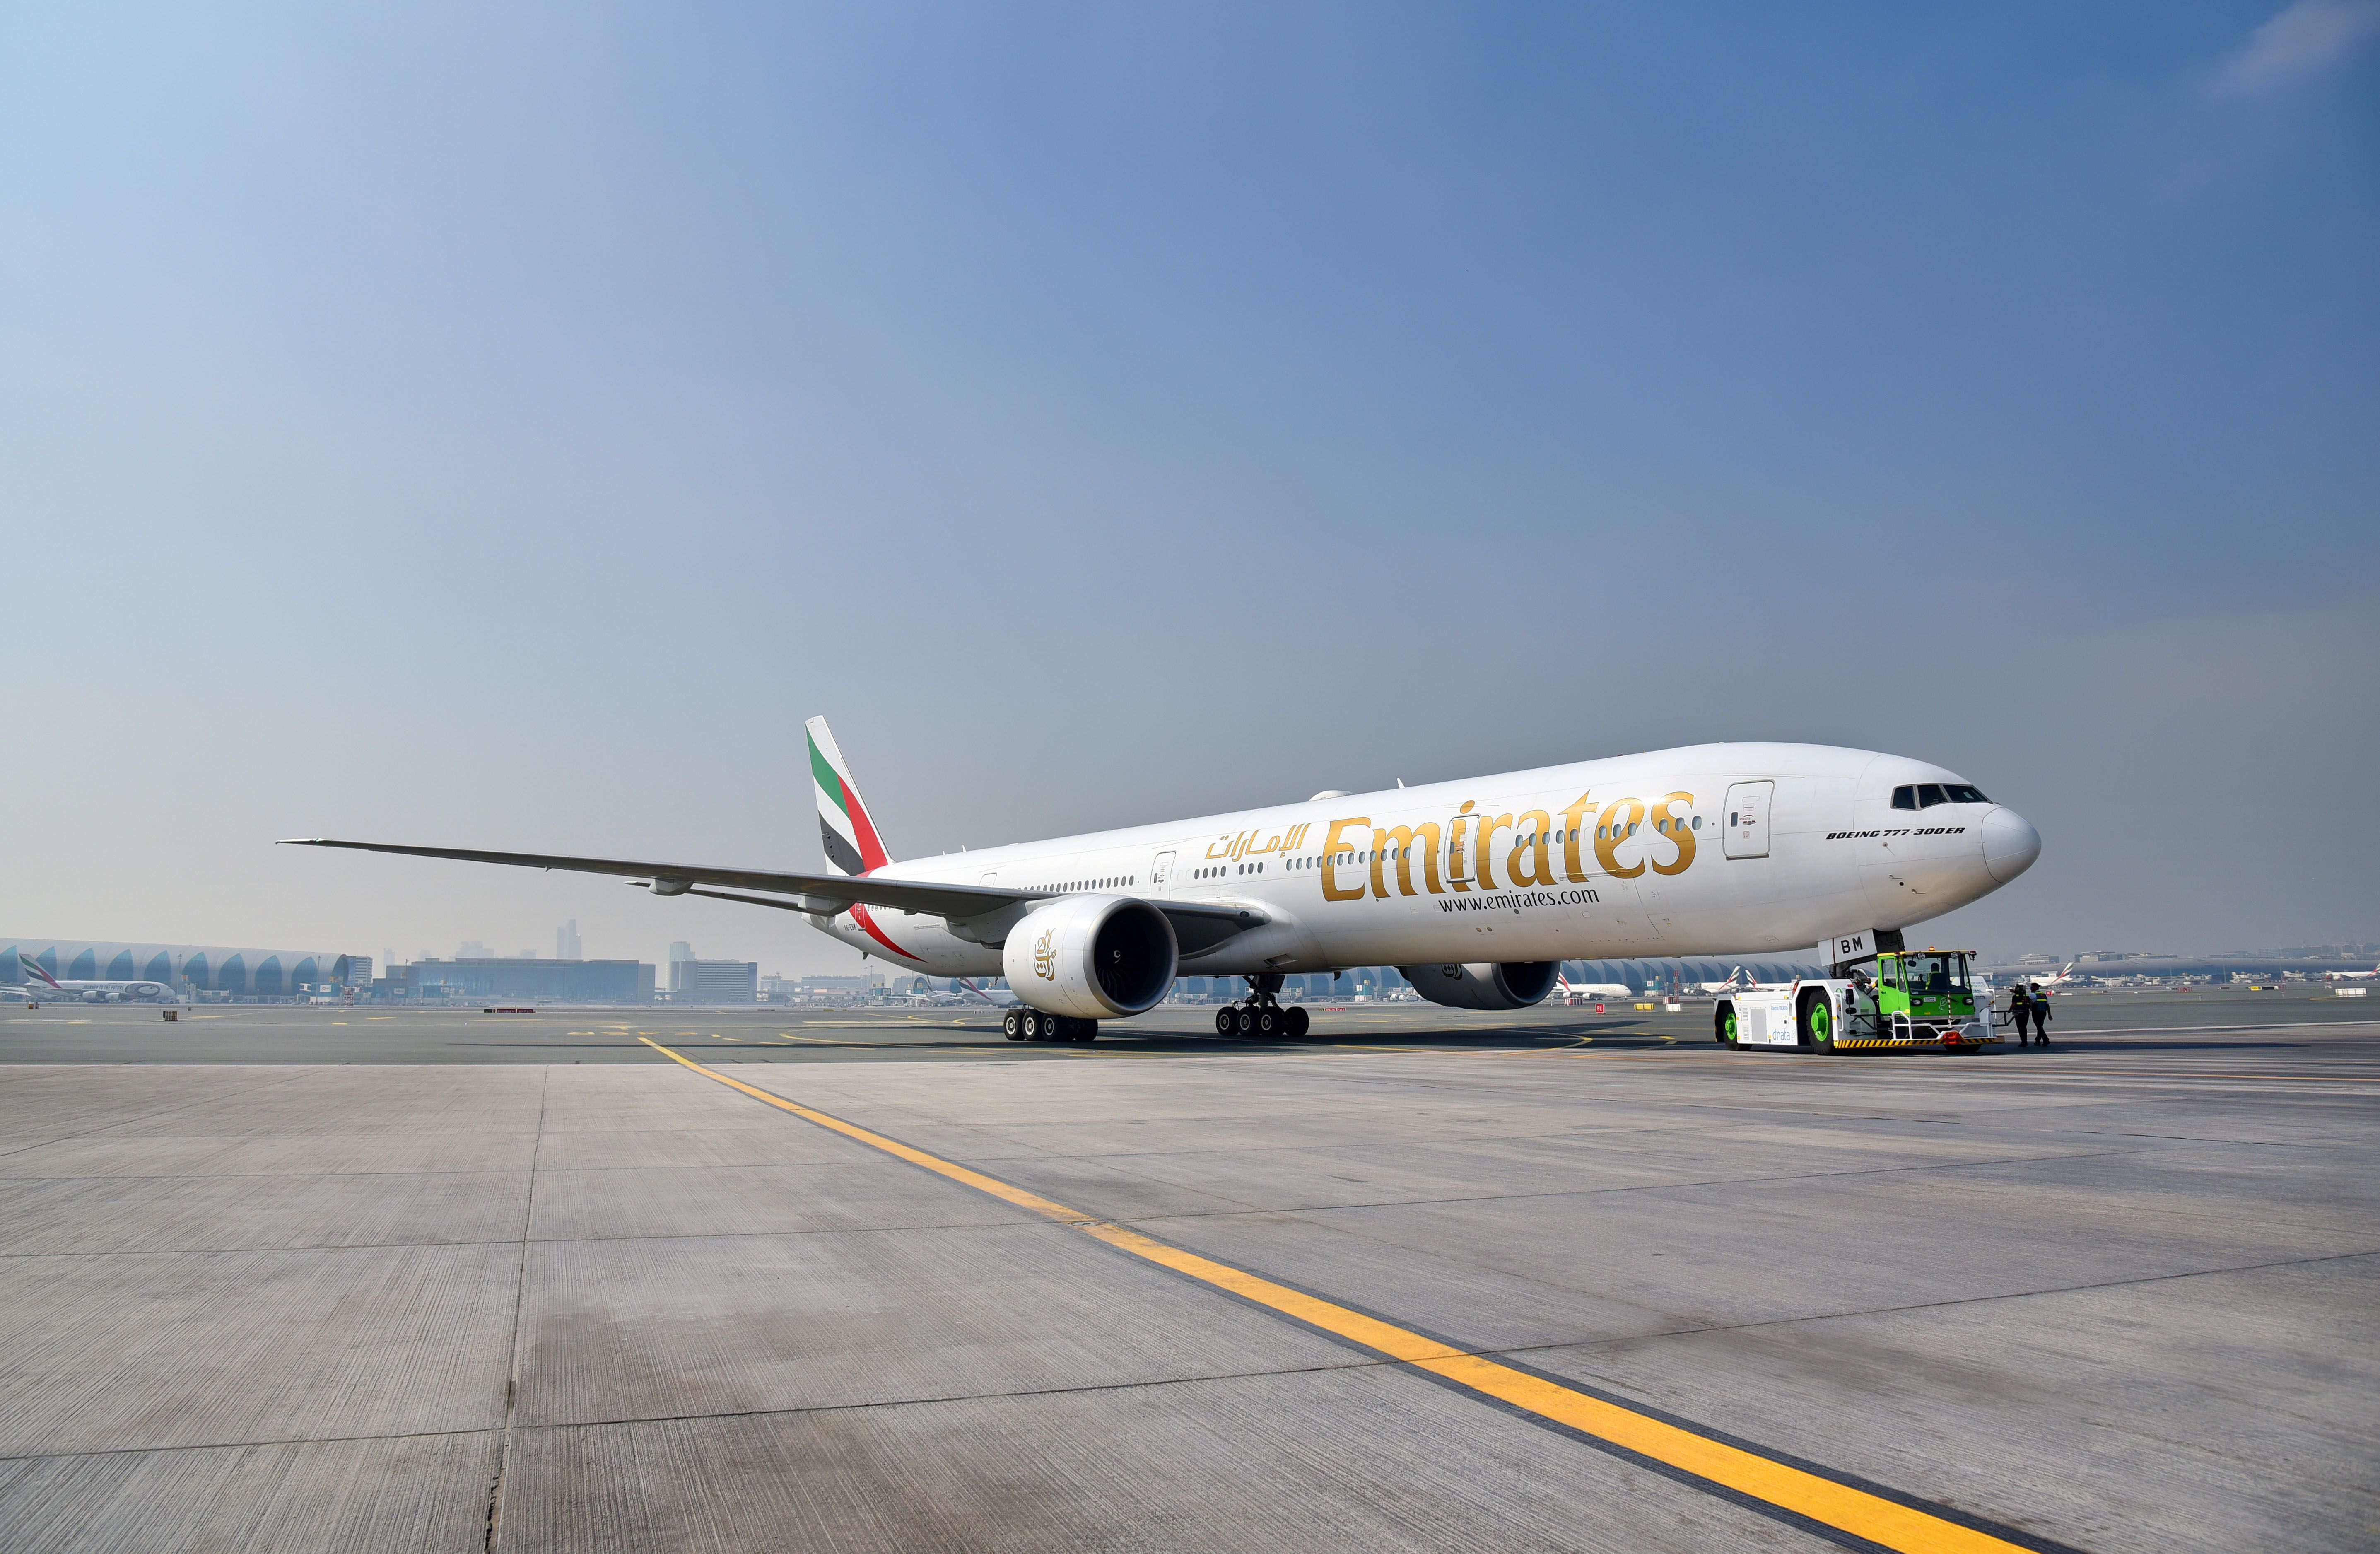 Emirates boeing 777 on ground